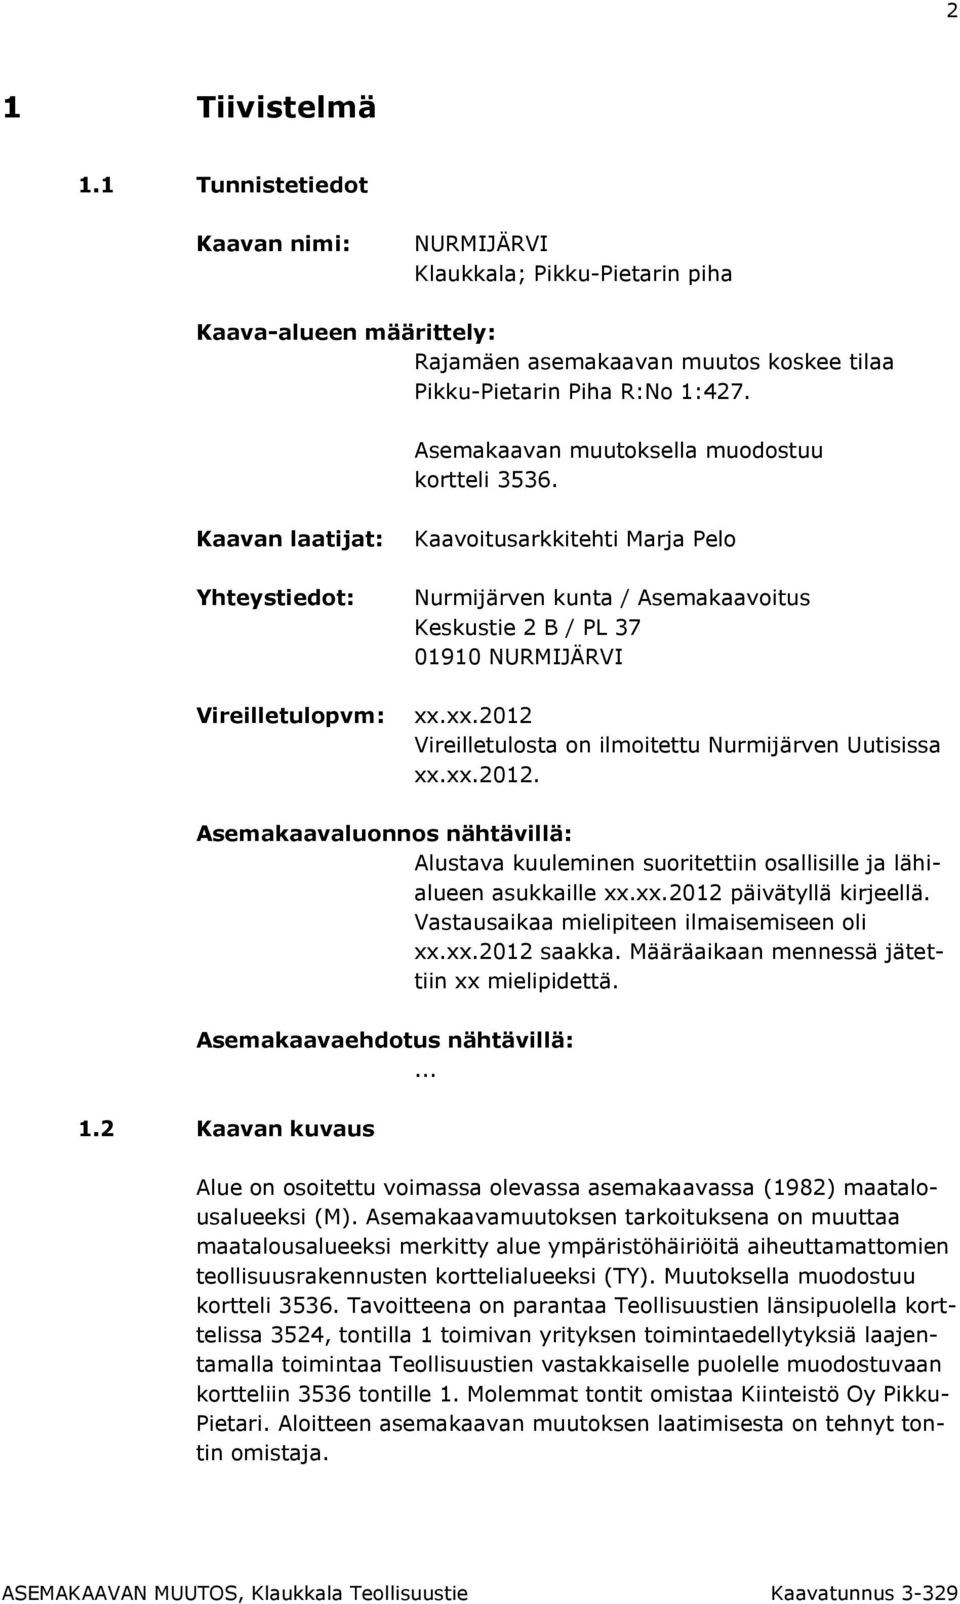 Kaavan laatijat: Yhteystiedot: Vireilletulopvm: Kaavoitusarkkitehti Marja Pelo Nurmijärven kunta / Asemakaavoitus Keskustie 2 B / PL 37 01910 NURMIJÄRVI xx.